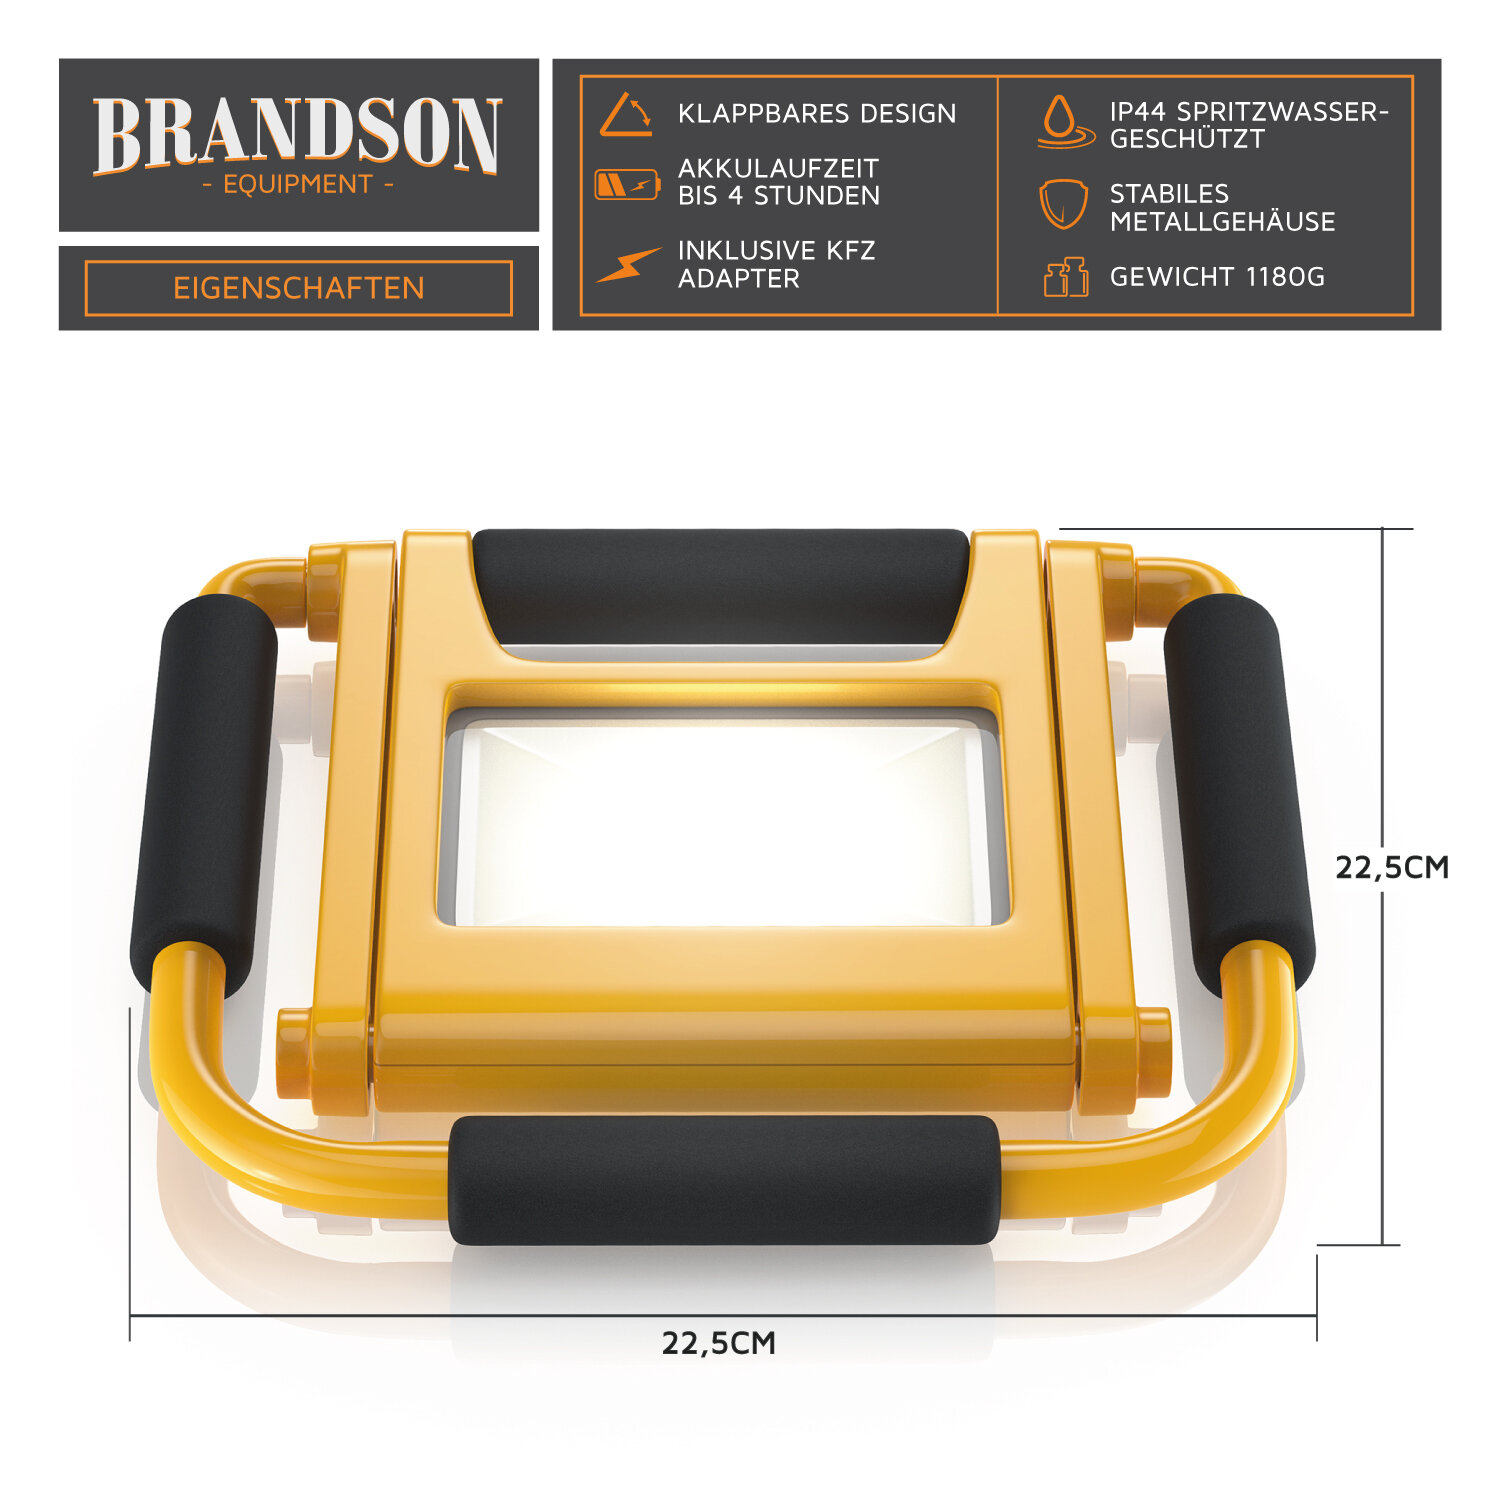 LED BAUSTRAHLER 200W_305457 — Brandson